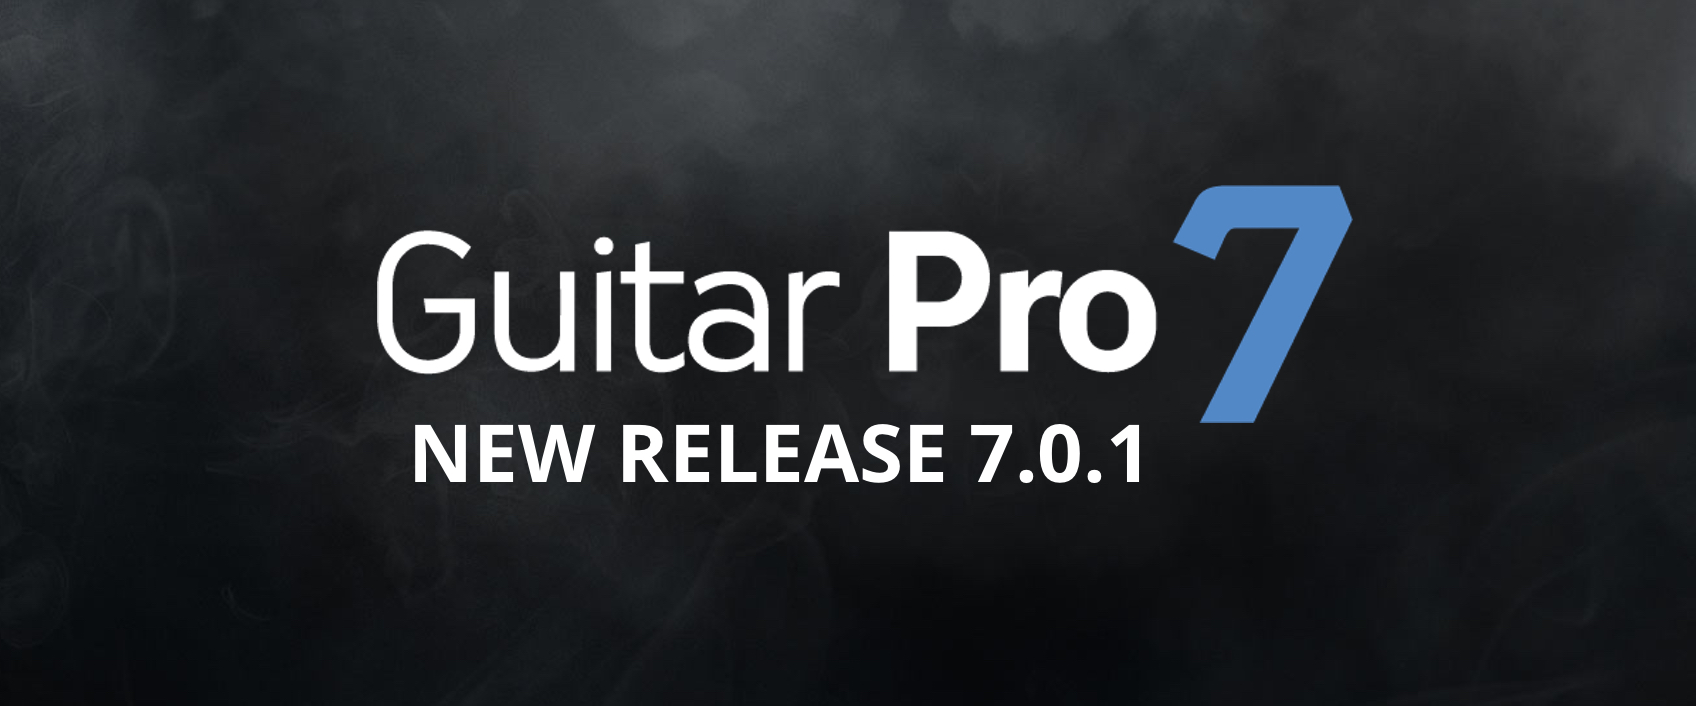 guitar pro update download